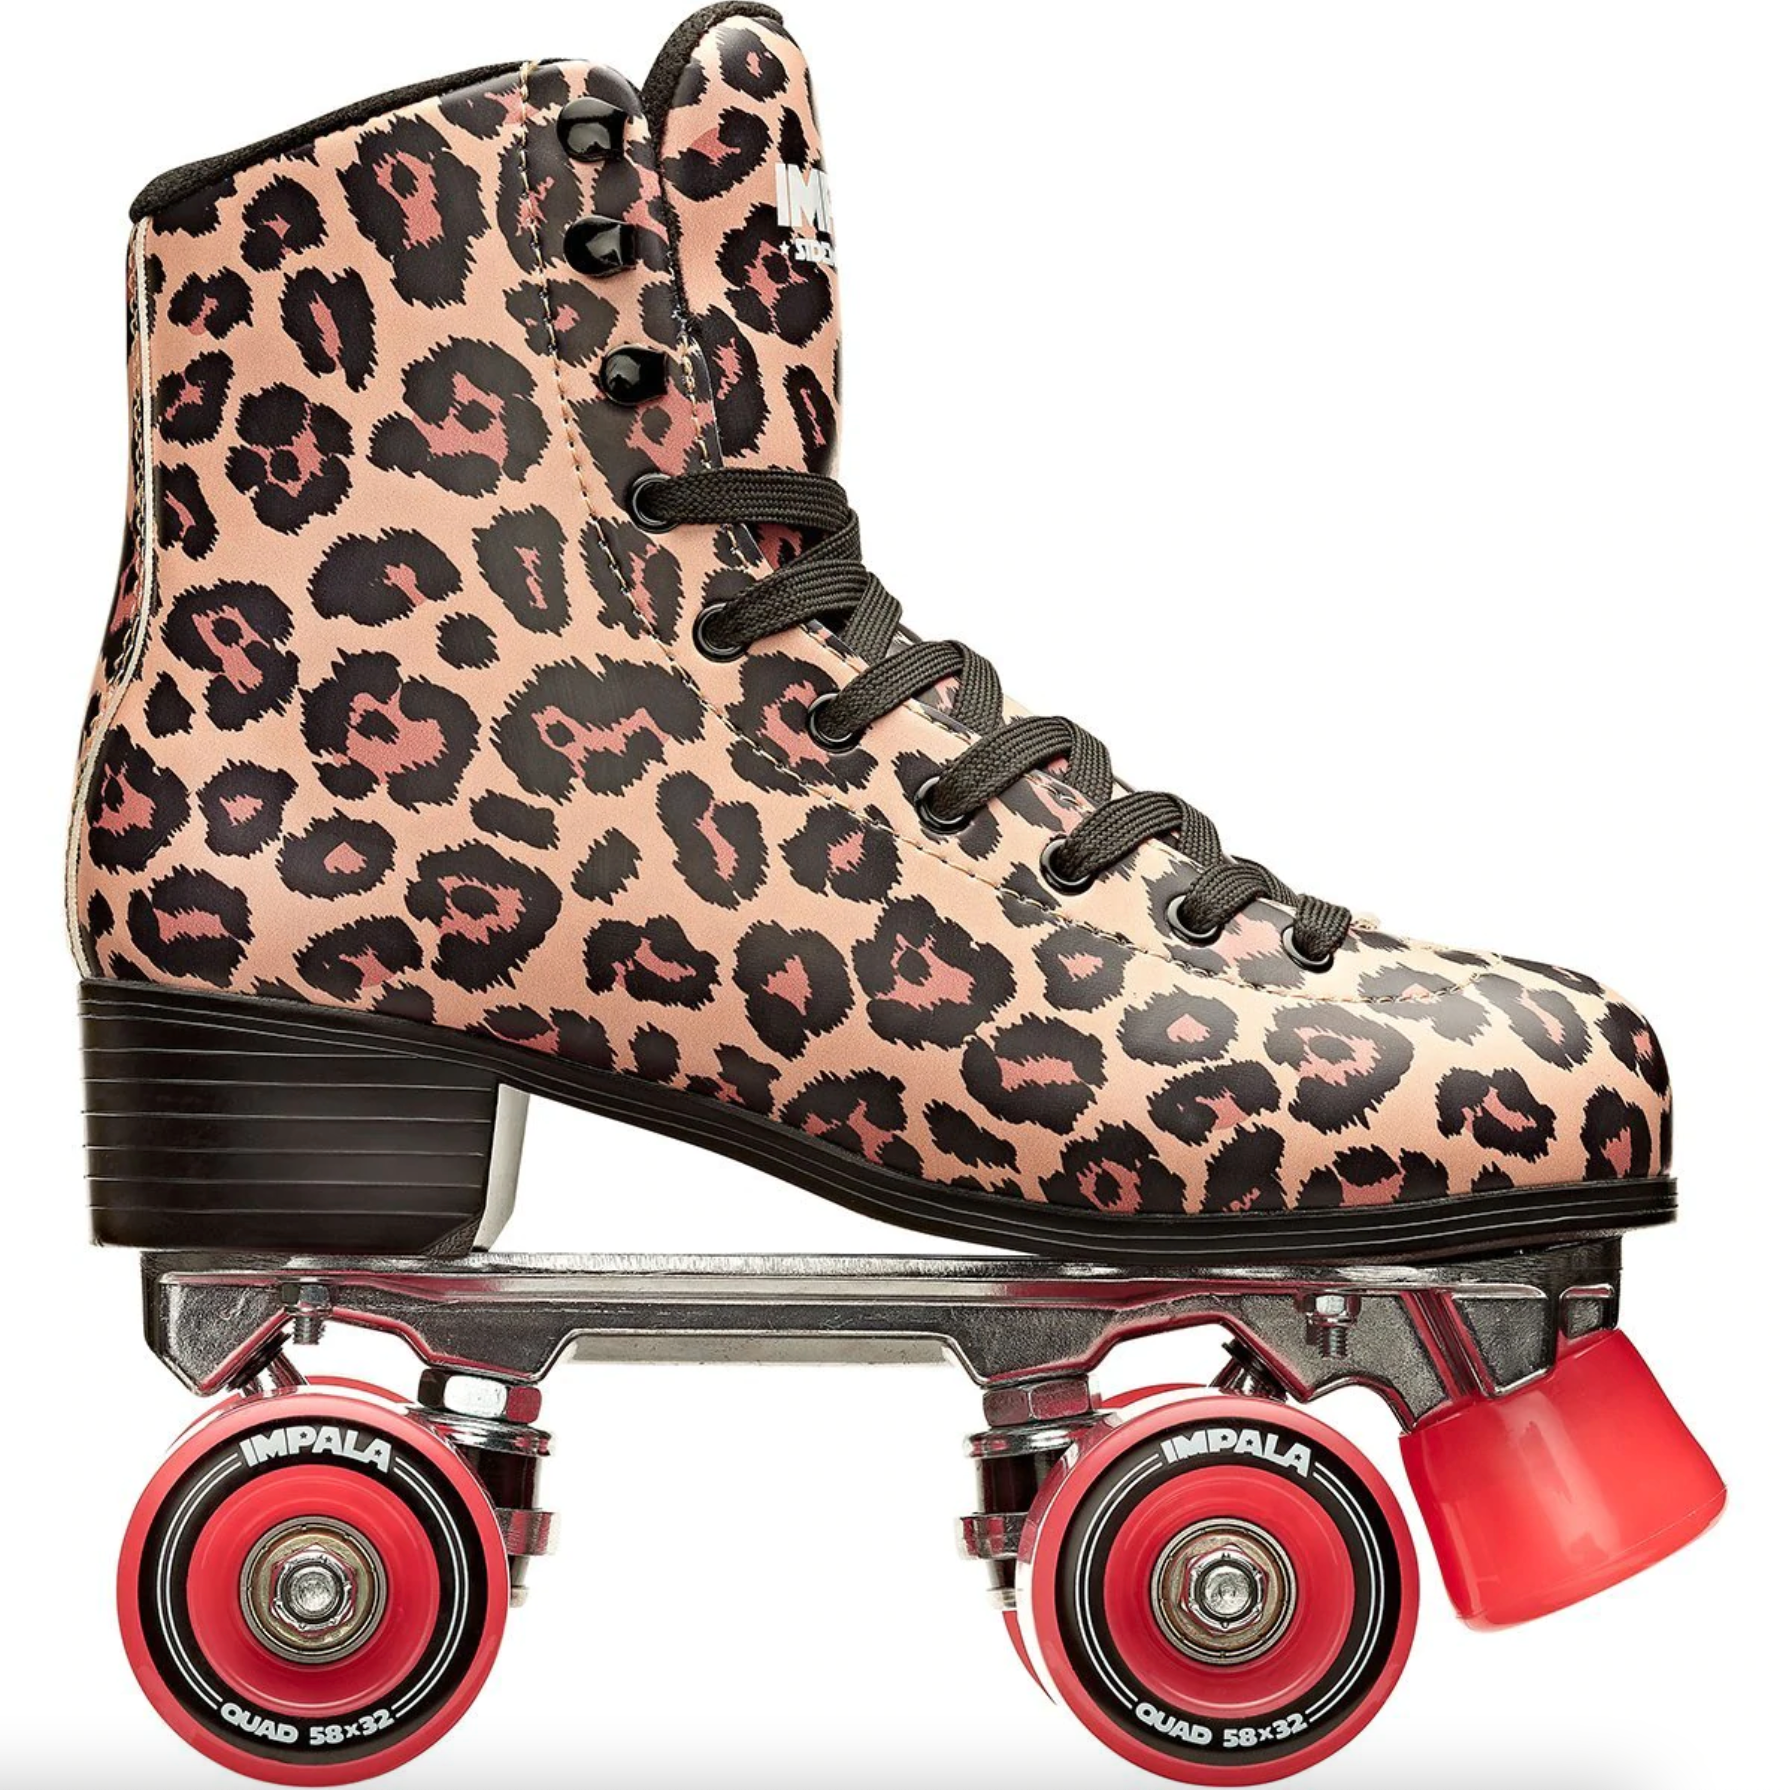 Rollerblades, Rollerblading, Inline Skates, Inline Skating, Skate Shops Near Me, Intuition Skate Shop, Roller Skates, Impala Leopard roller skates